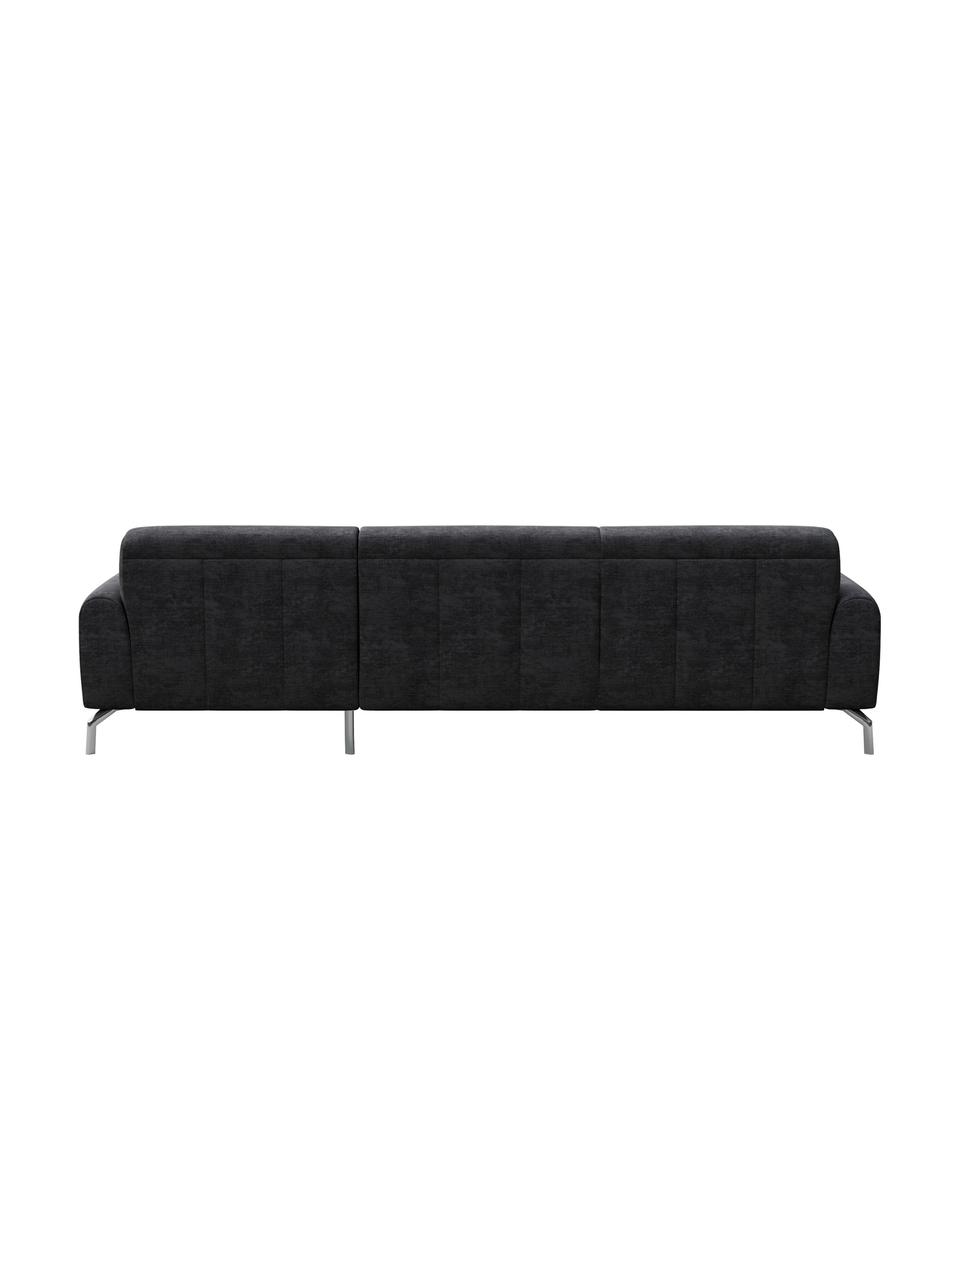 Sofa narożna z Zero Spot System Puzo, Tapicerka: 100% poliester z Zero Spo, Nogi: metal lakierowany, Ciemny szary, S 240 x G 165 cm